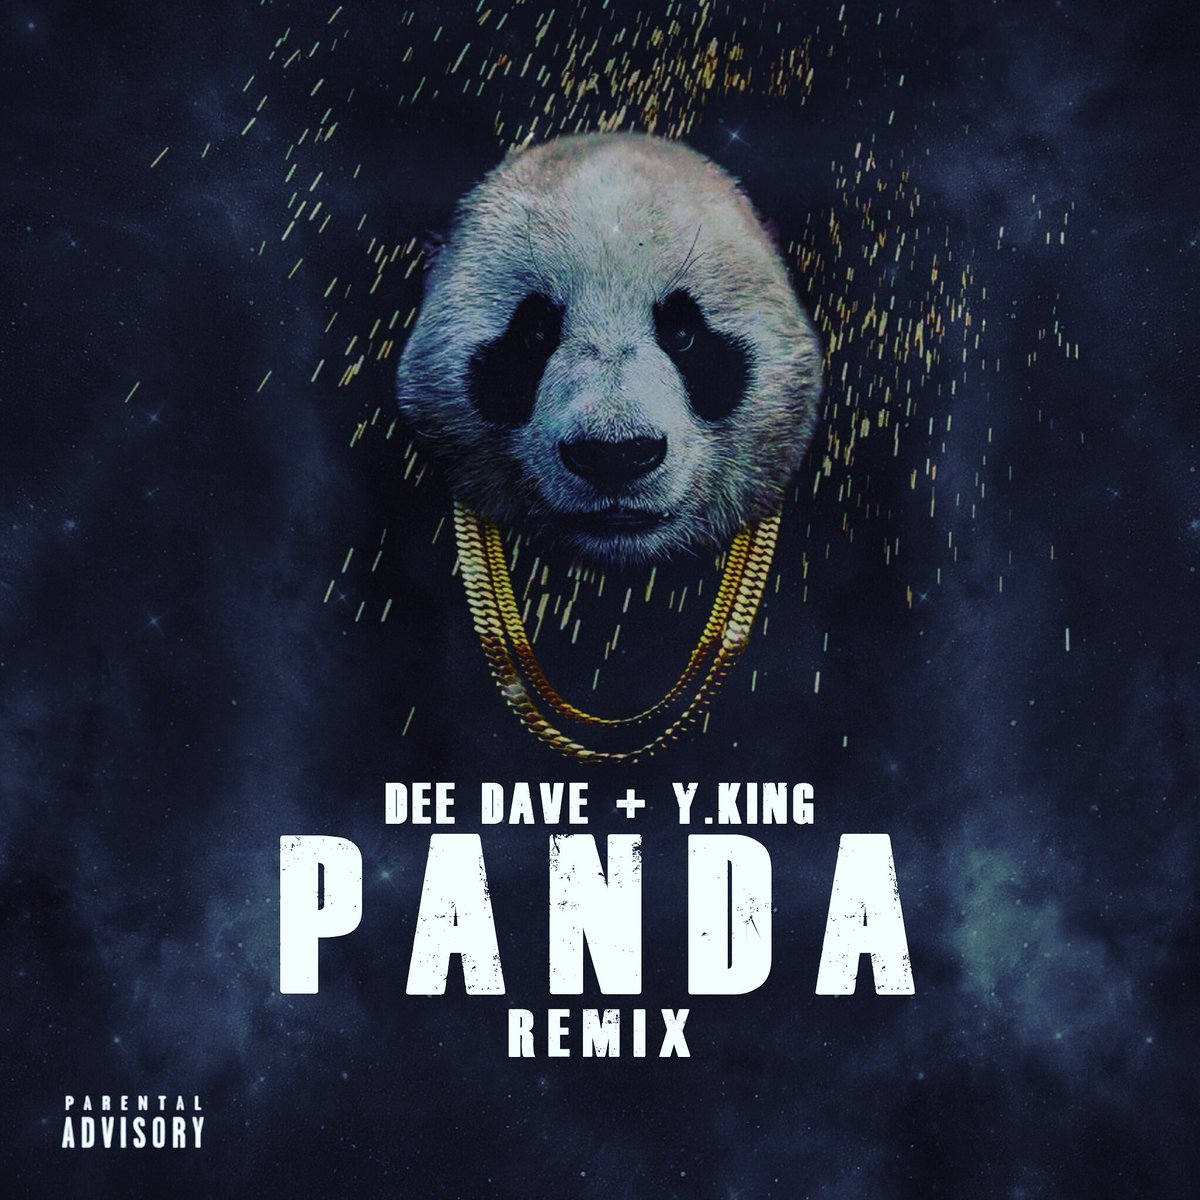 Песня панда бегу от гепарда